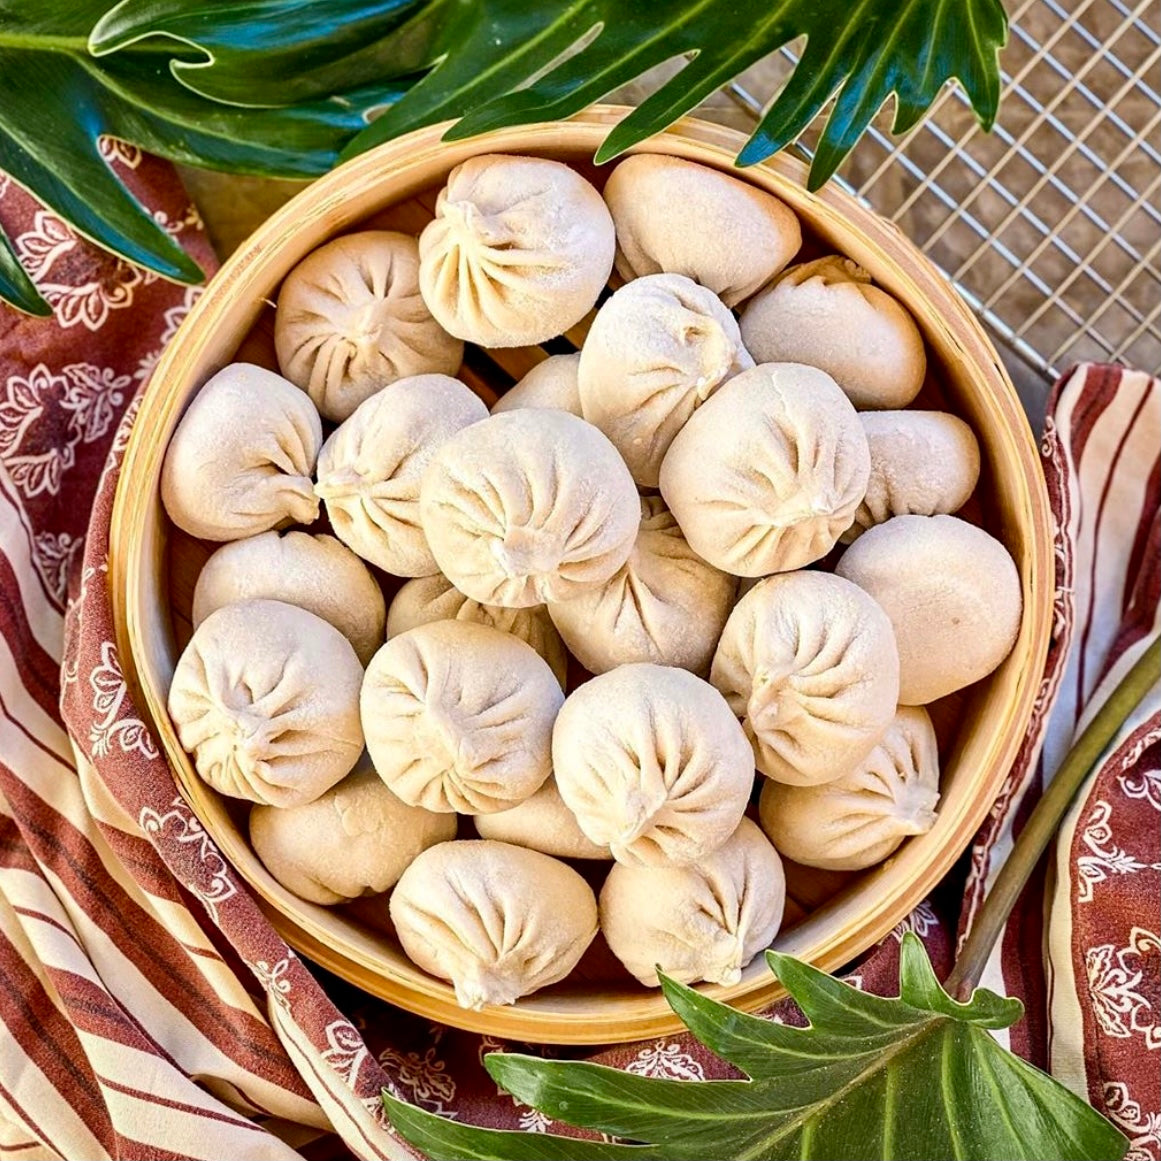 Xiaolongbao (Pork) - XLB Thin - Yummi Dumplings